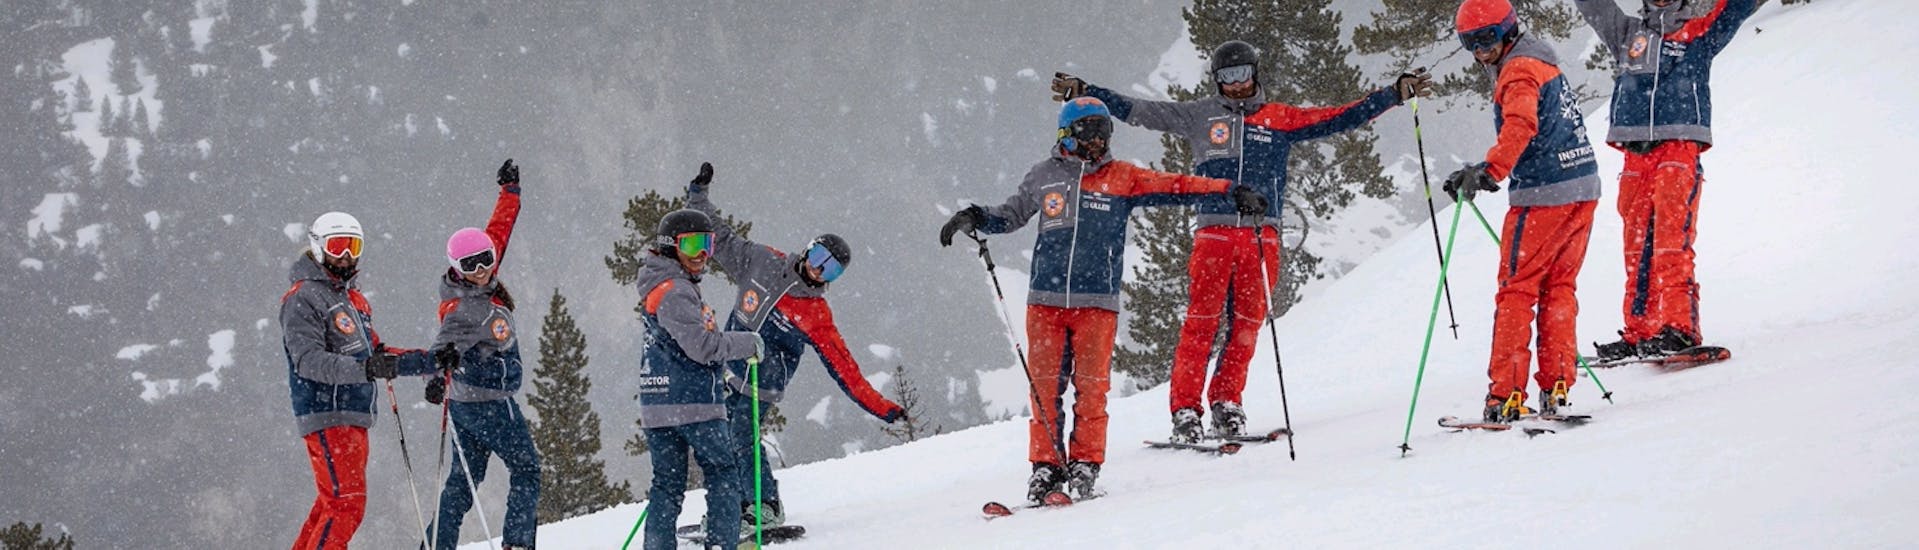 Guide particulier de ski à Baqueira Beret pour Skieurs expérimentés.